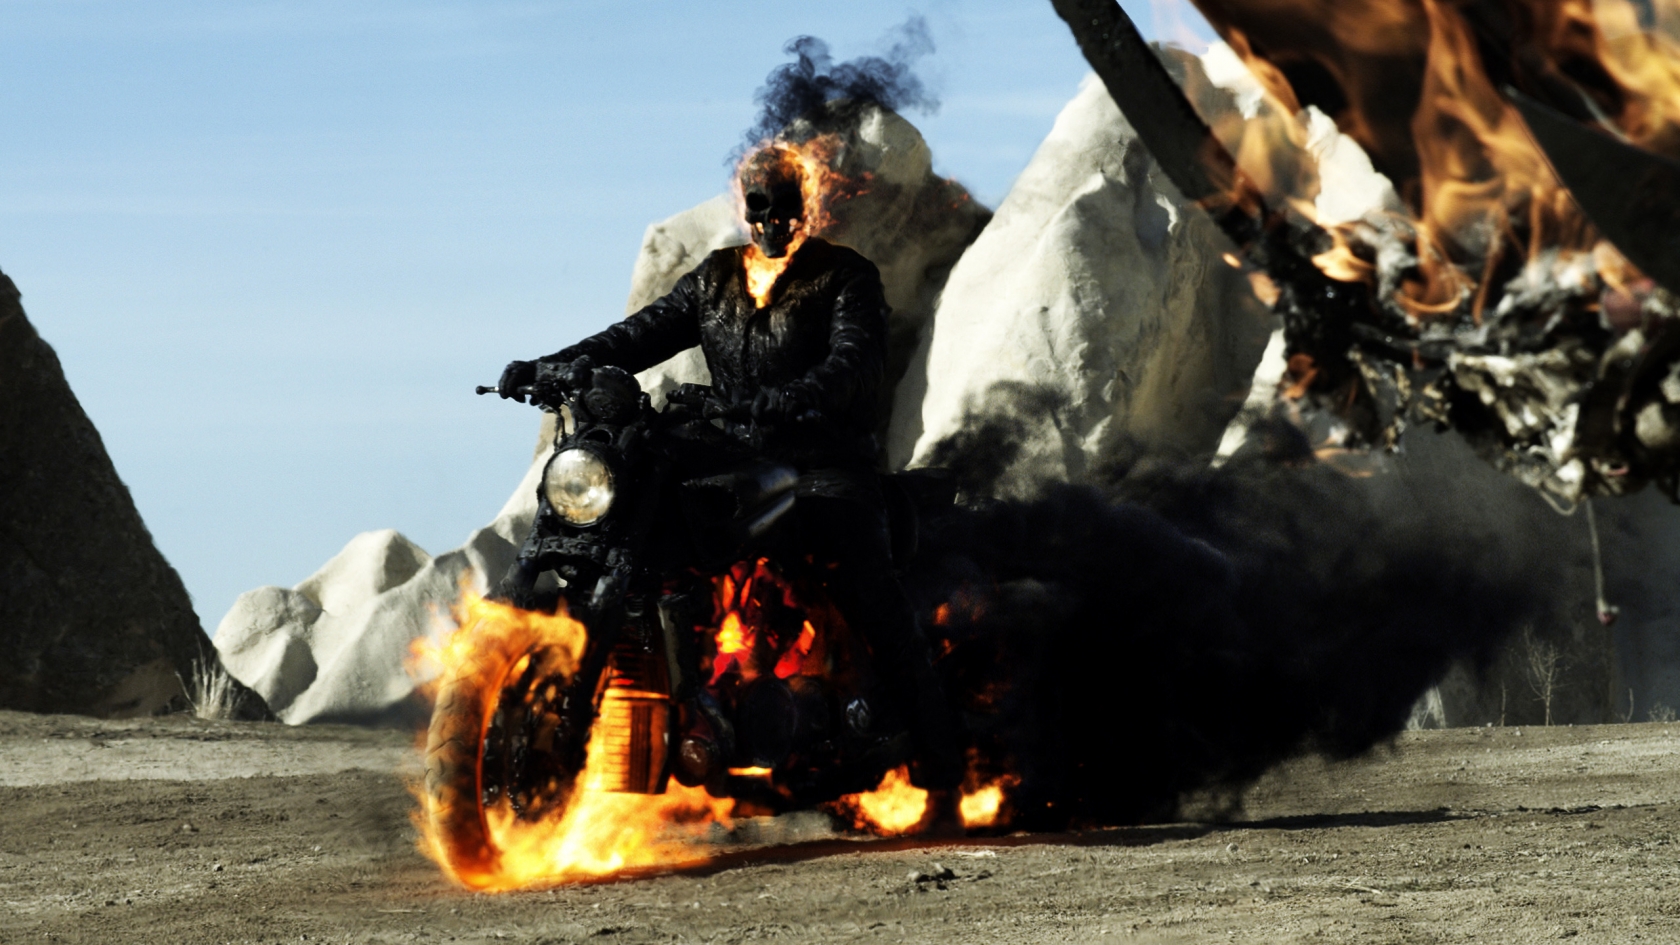 Ghost Rider Spirit of Vengeance 2012 for 1680 x 945 HDTV resolution